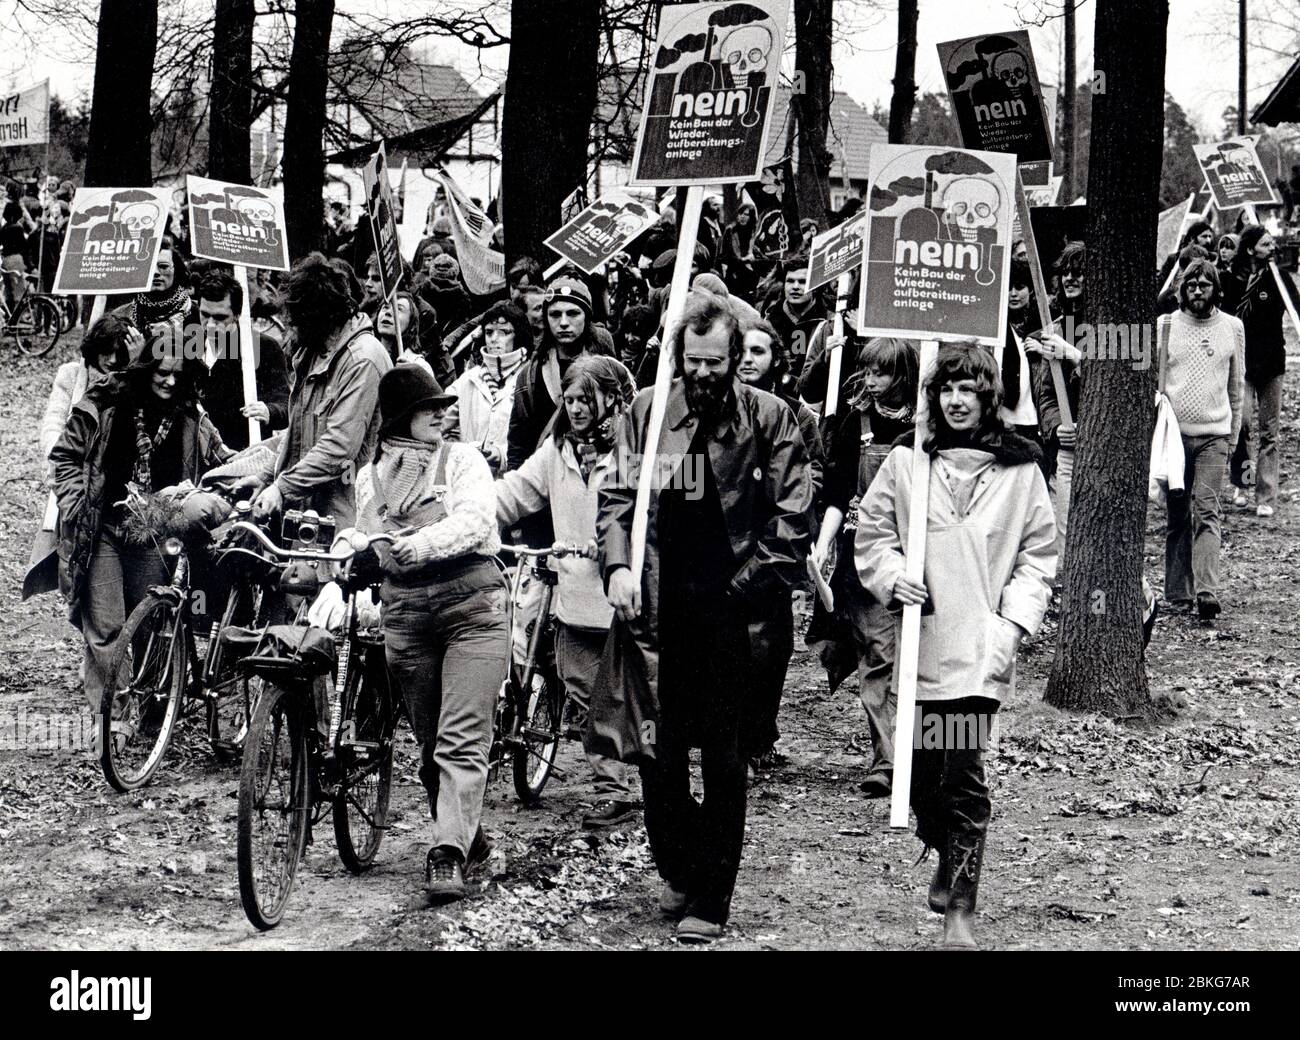 Gorleben, 25.-31.3.1979: Gorleben-Treck 1979, Demonstration gegen die Nutzung der Kernenergie, die sich gegen geplante Kernenergieanlagen bei Gorleben im Landkreis Lüchow-Dannenberg richtete. Der Treck von Bauern, Studenten und Atomkraftgegnern begann am 25. März 1979 im Wendland und endete als Abschlusskundgebung am 31. März 1979 in Hannover mit etwa 100.000 Teilnehmern   ---   Gorleben, Lower-Saxony, Germany. 25th to 31th March 1979 - Anti-nuclear trek from Gorleben to Hannover/Germany Stock Photo